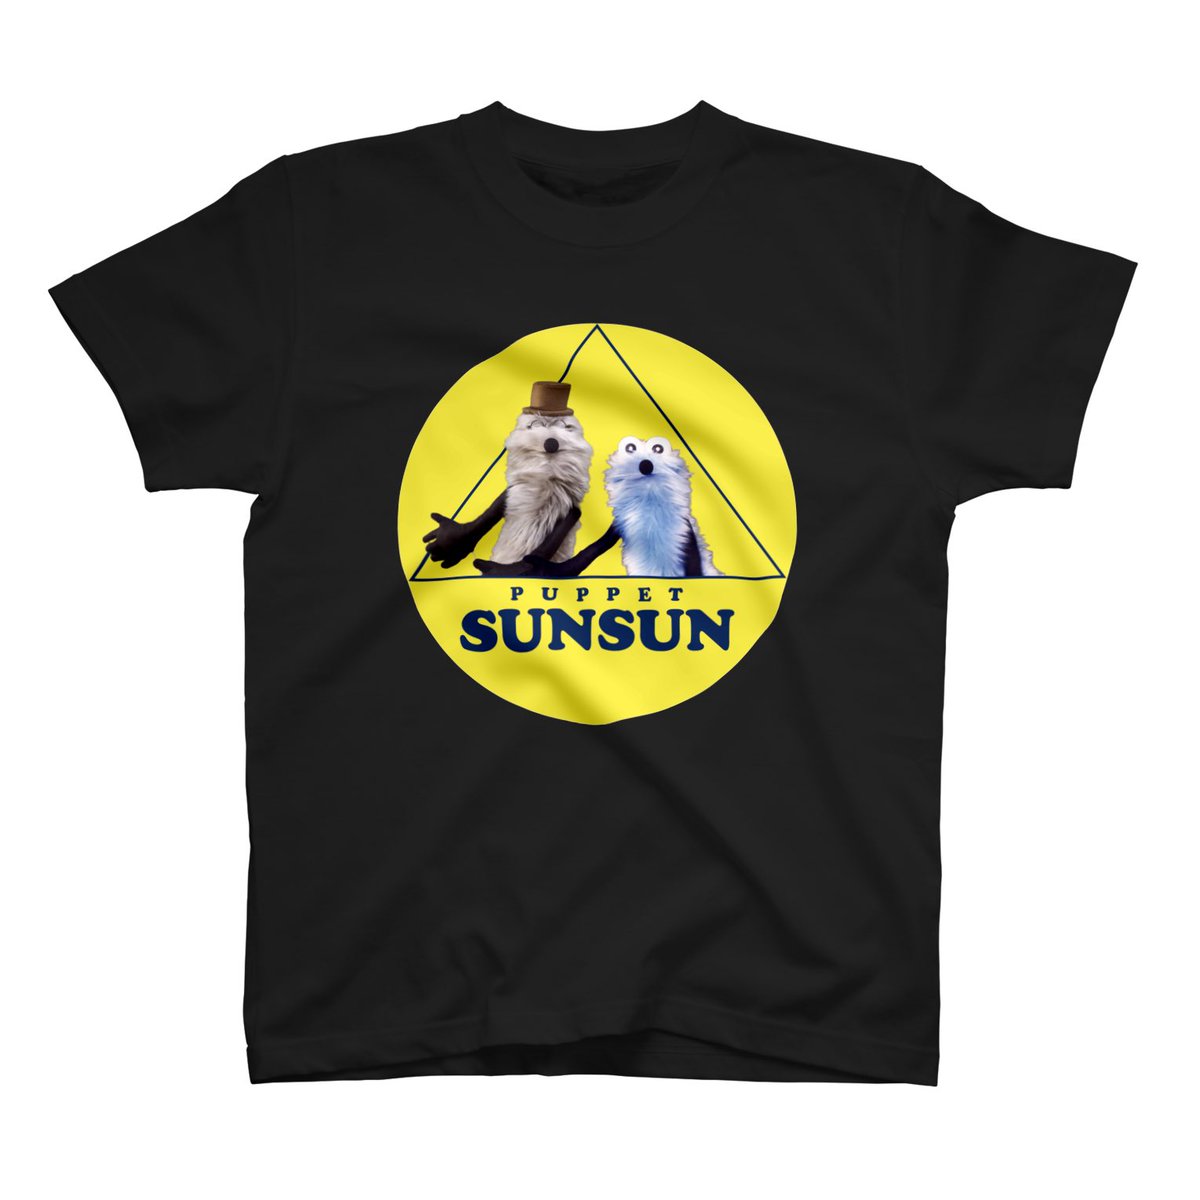 「SUZURIさんのTシャツセール、さいごの日になりましたっ!
みなさんいっぱいあ」|パペットスンスンのイラスト